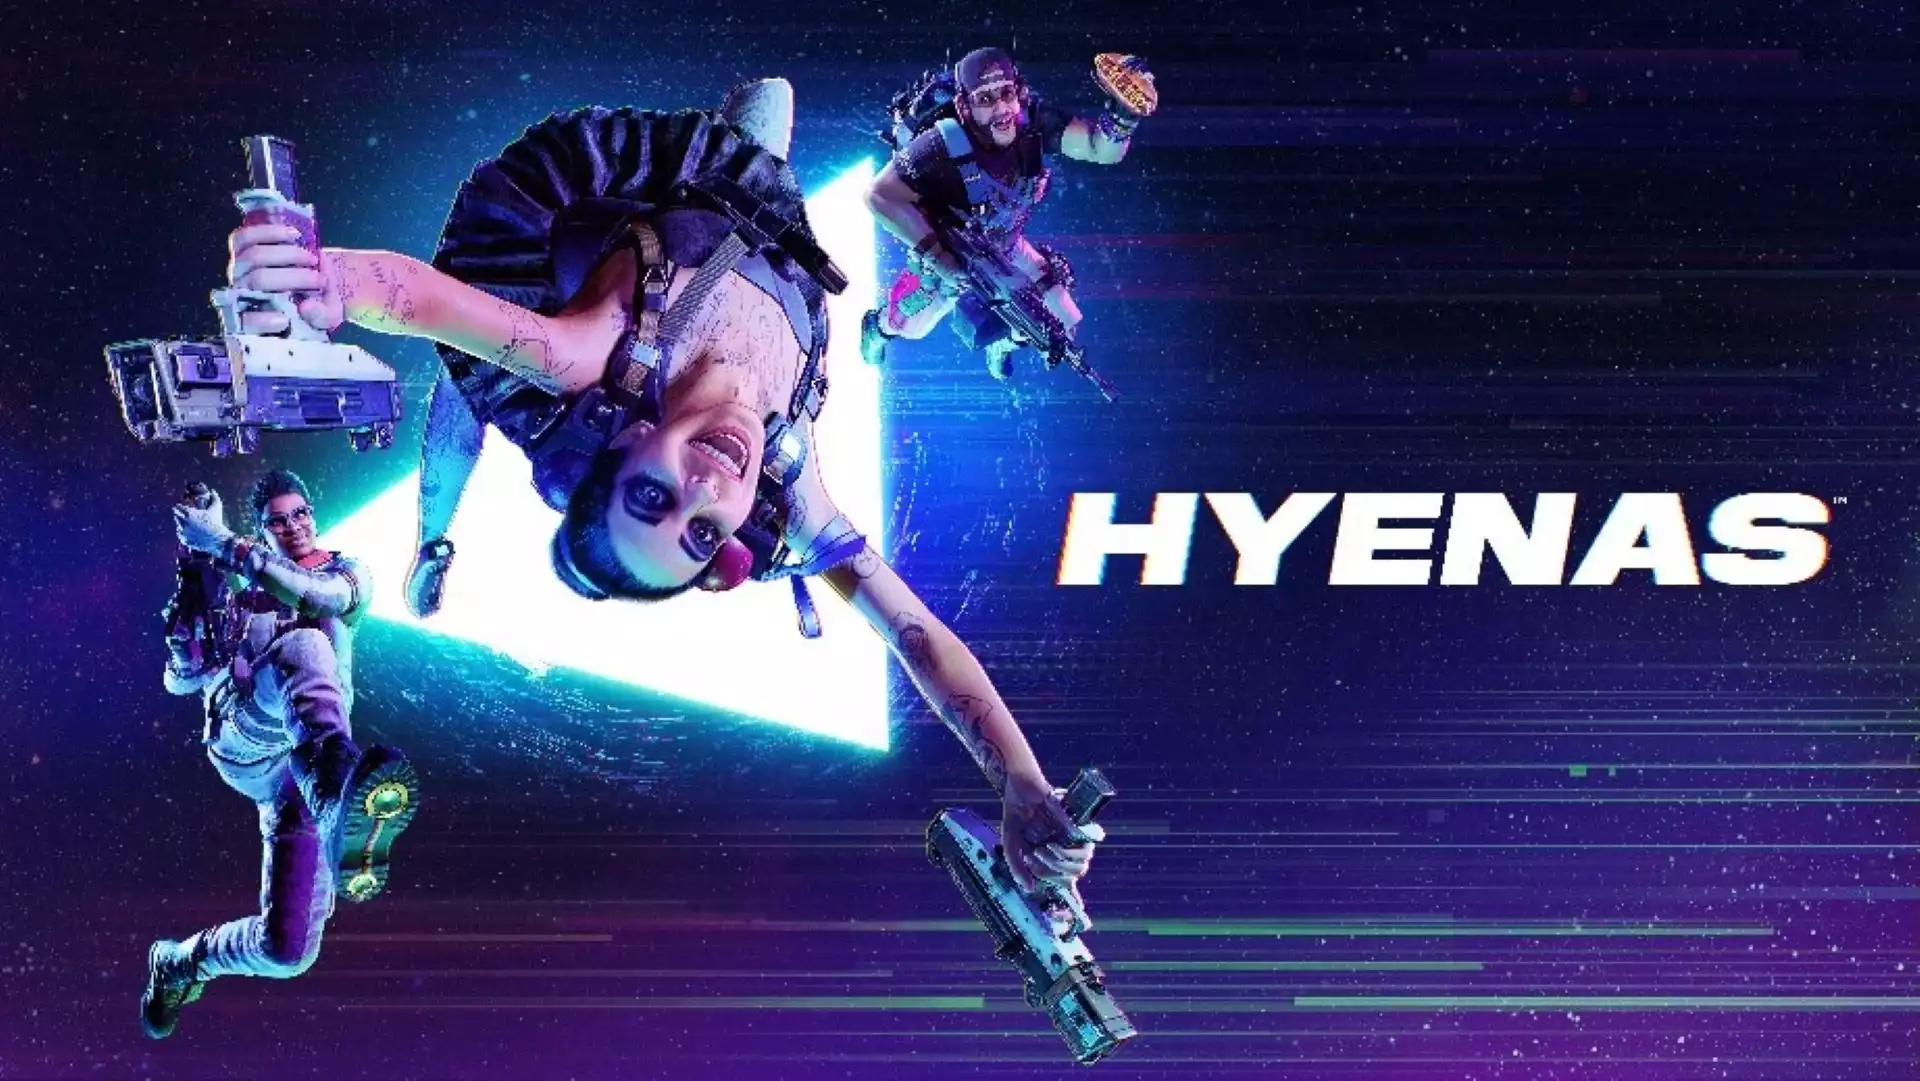 HYENAS trailers, gameplay & platforms